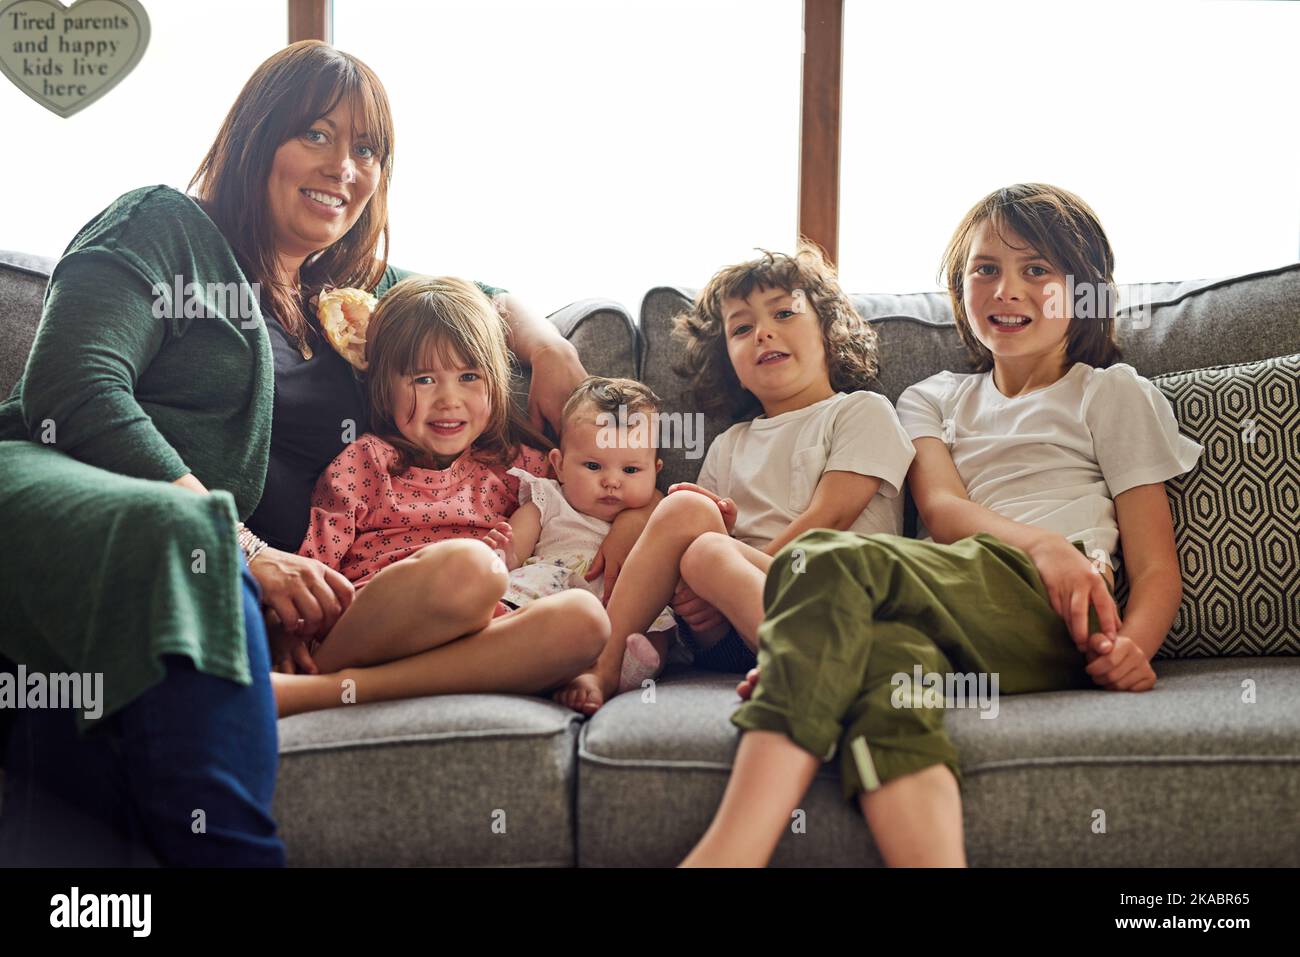 Waren eine große und gesegnete glückliche Familie. Porträt einer Mutter, die sich zu Hause mit ihren vier kleinen Kindern verbunden hat. Stockfoto